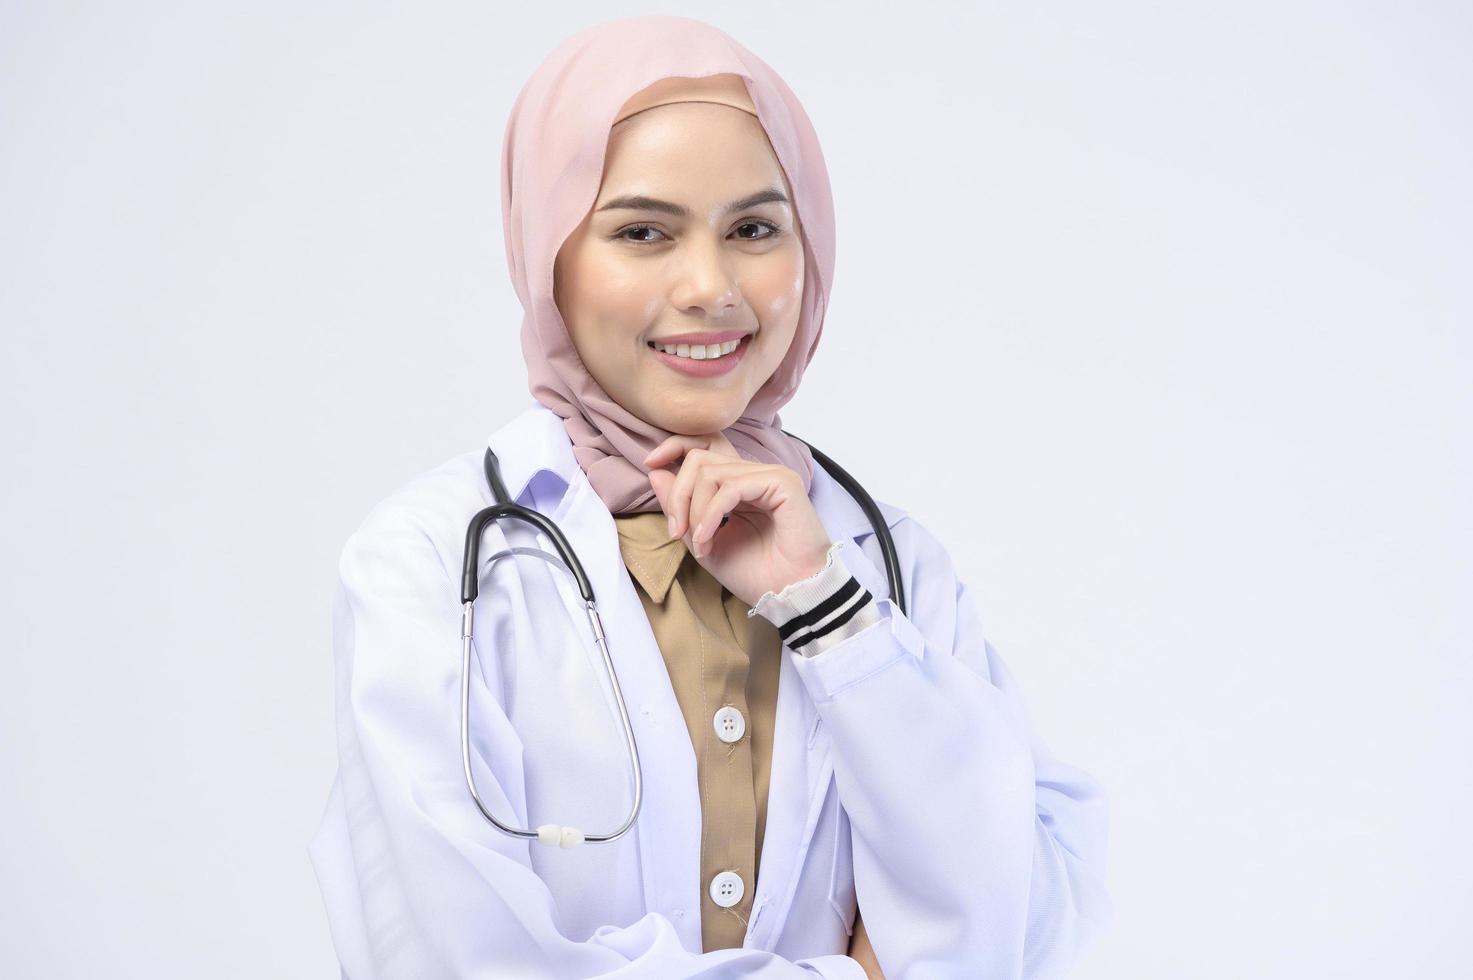 médica muçulmana com hijab sobre estúdio de fundo branco. foto